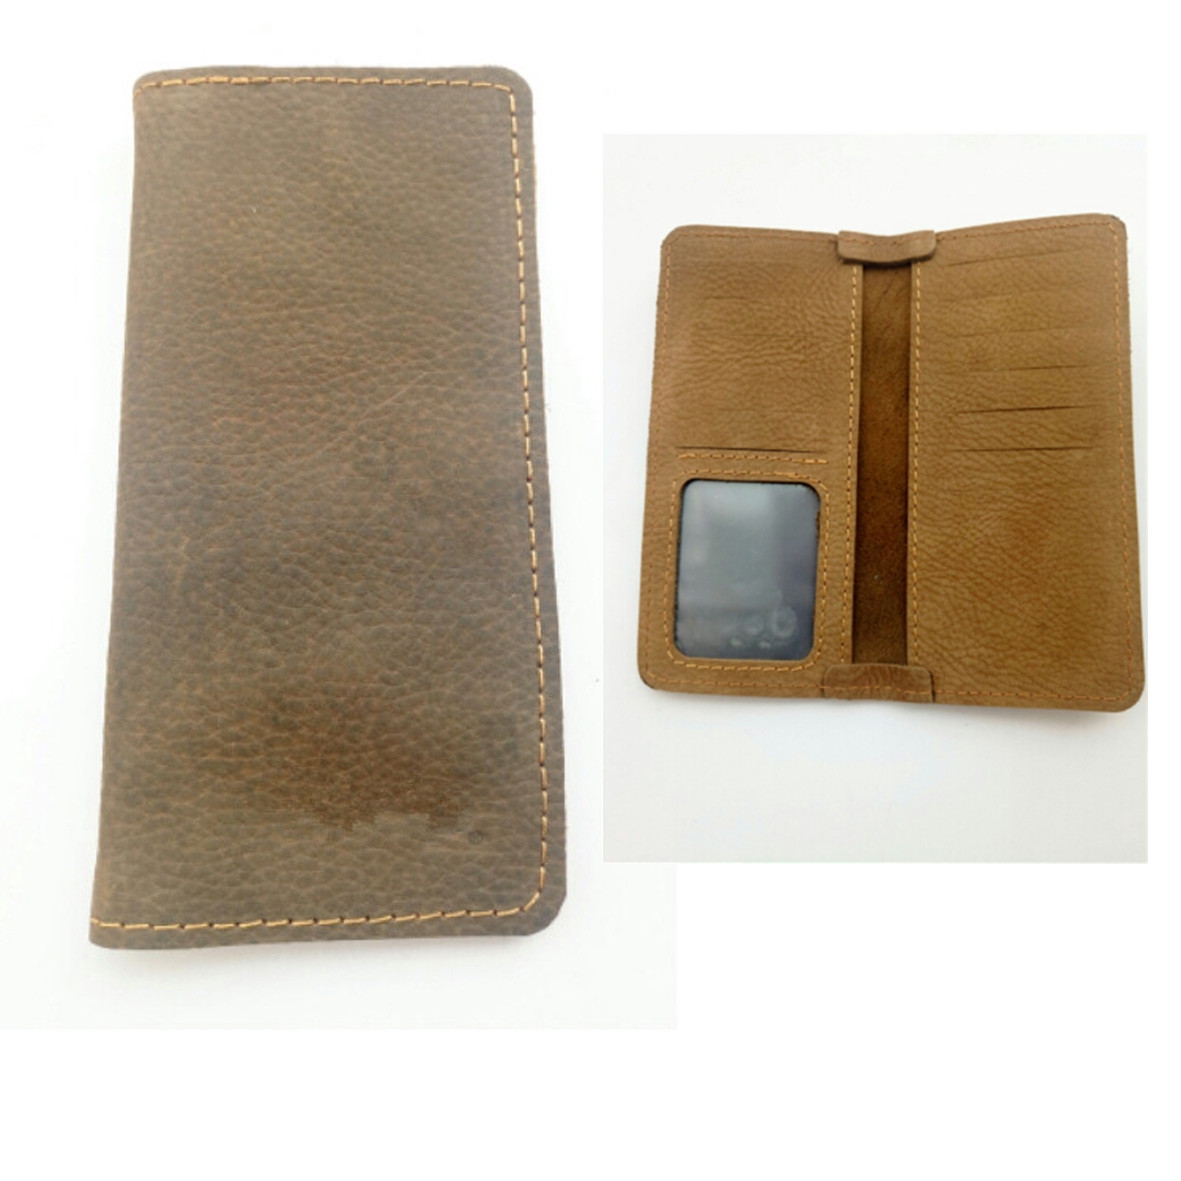 GL-ELY1105 Genuine Leather Men's Wallet